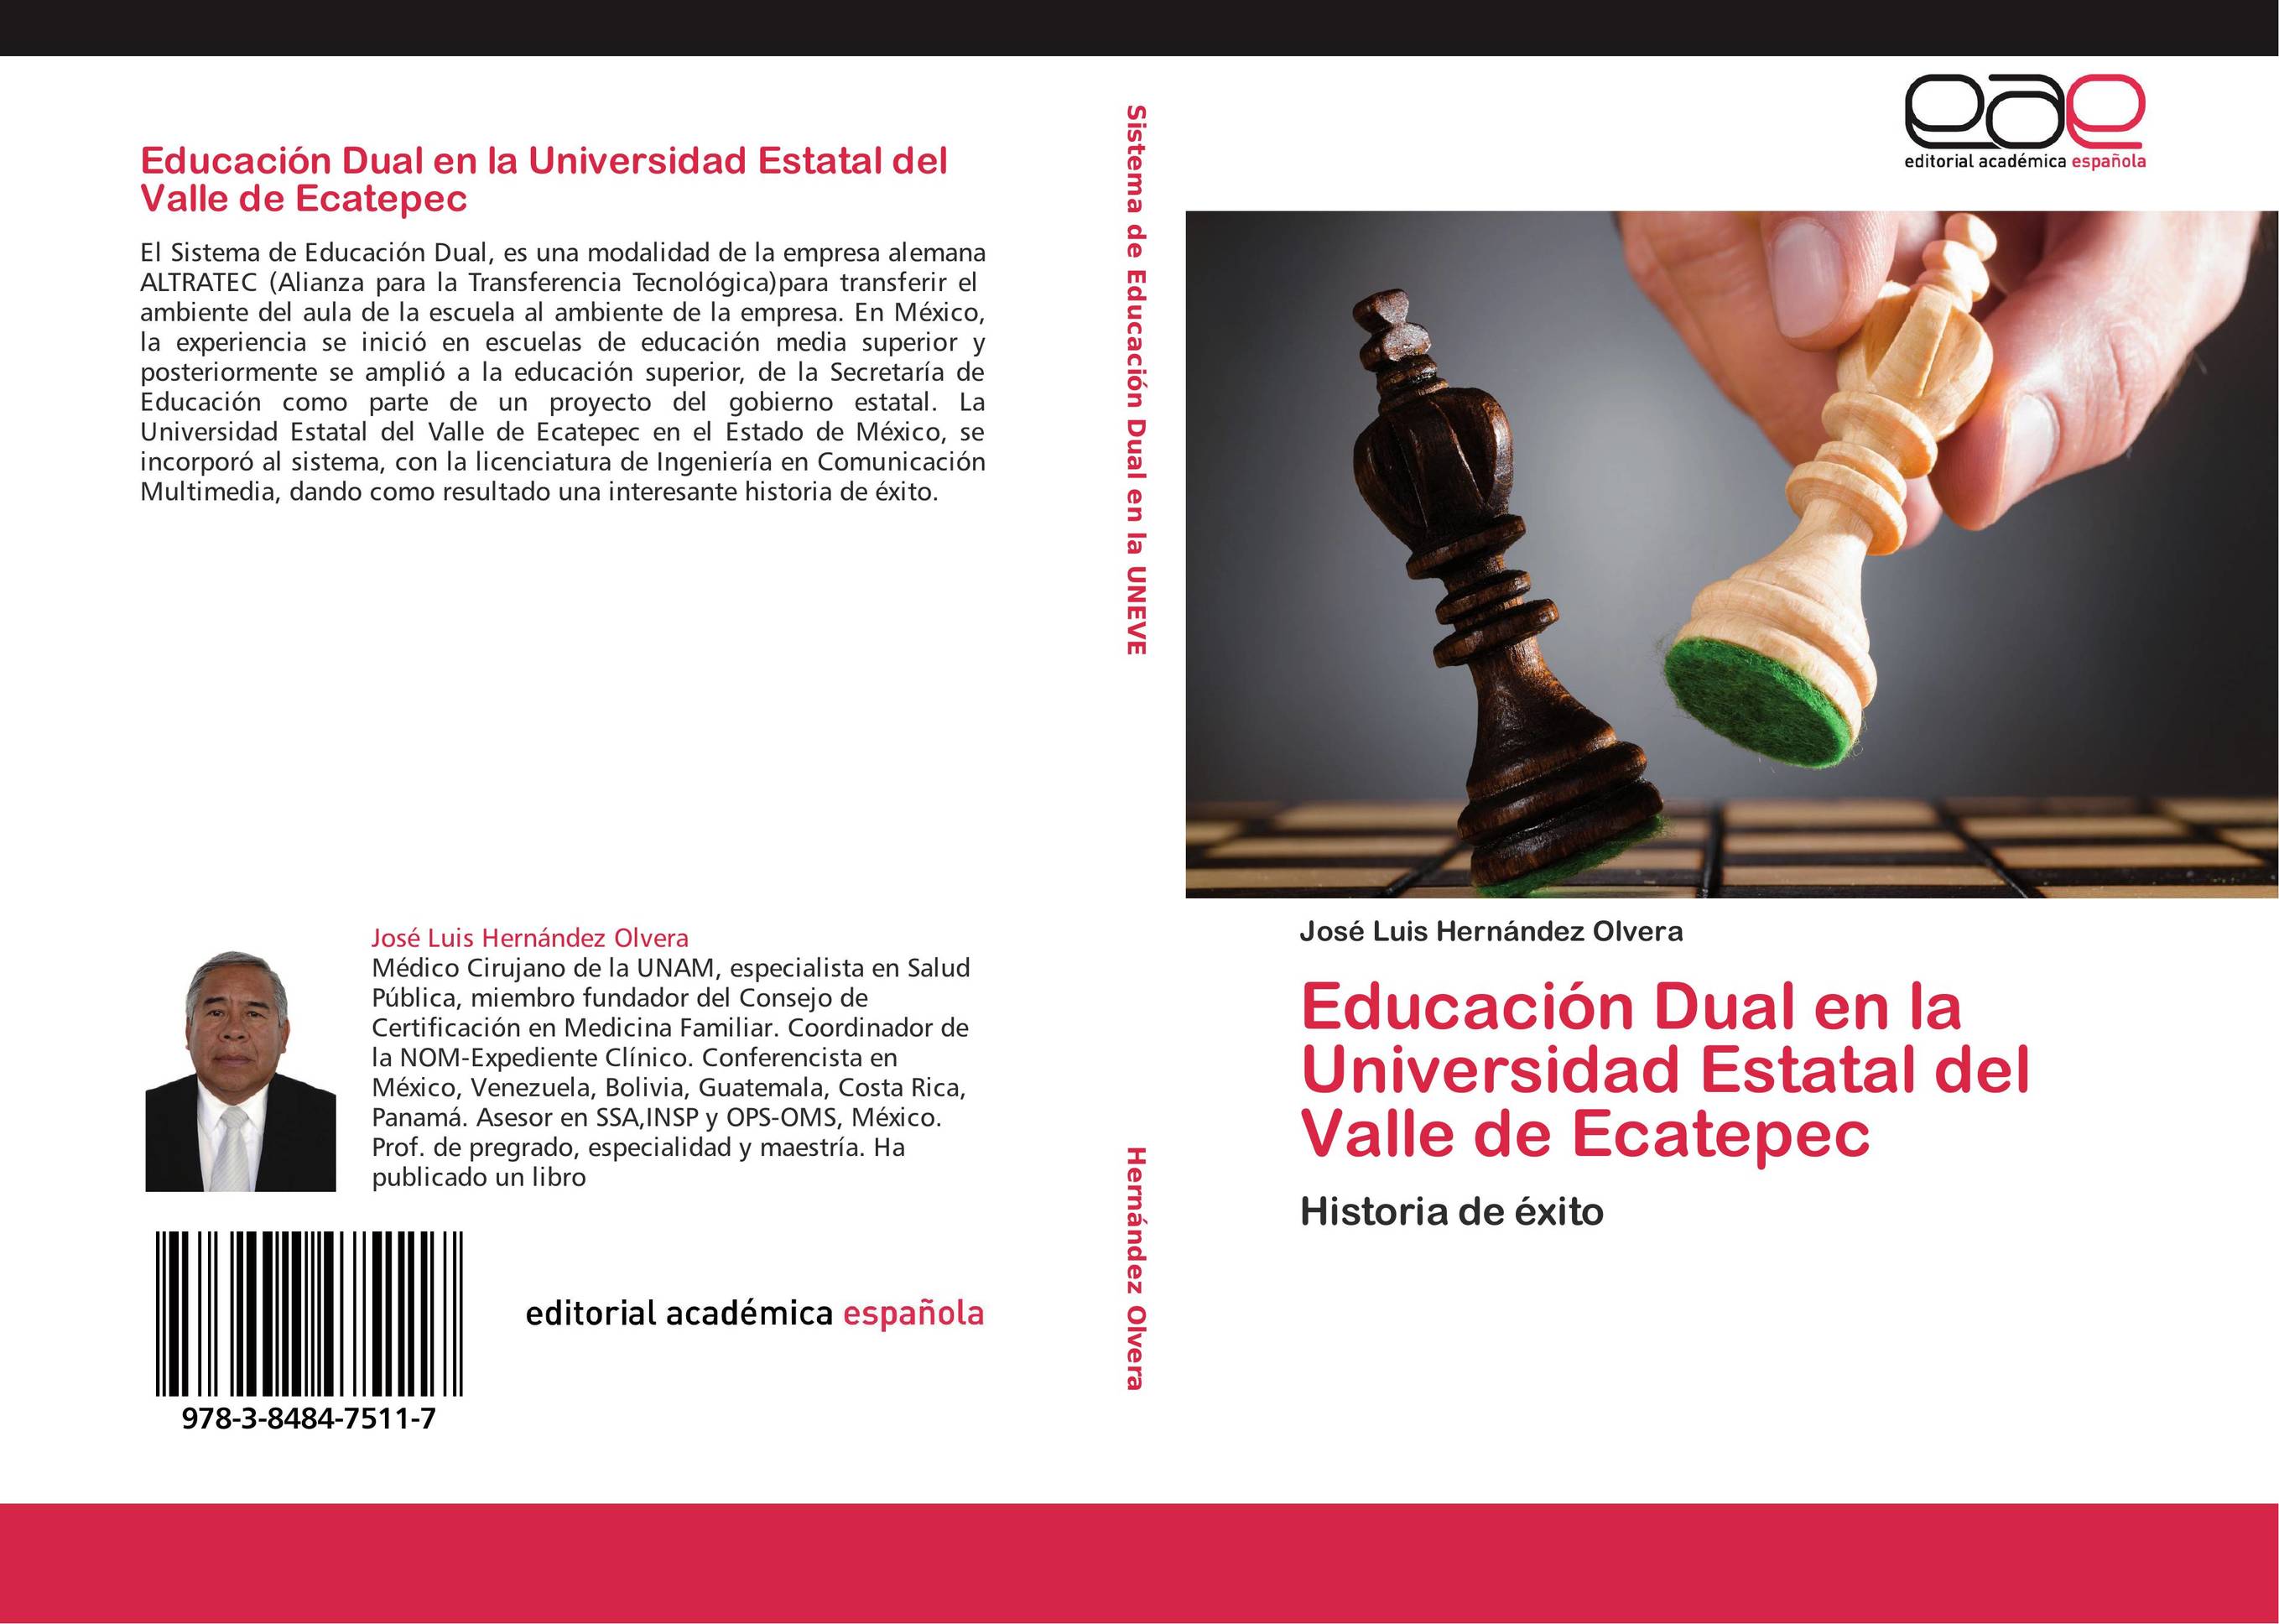 Educación Dual en la Universidad Estatal del Valle de Ecatepec